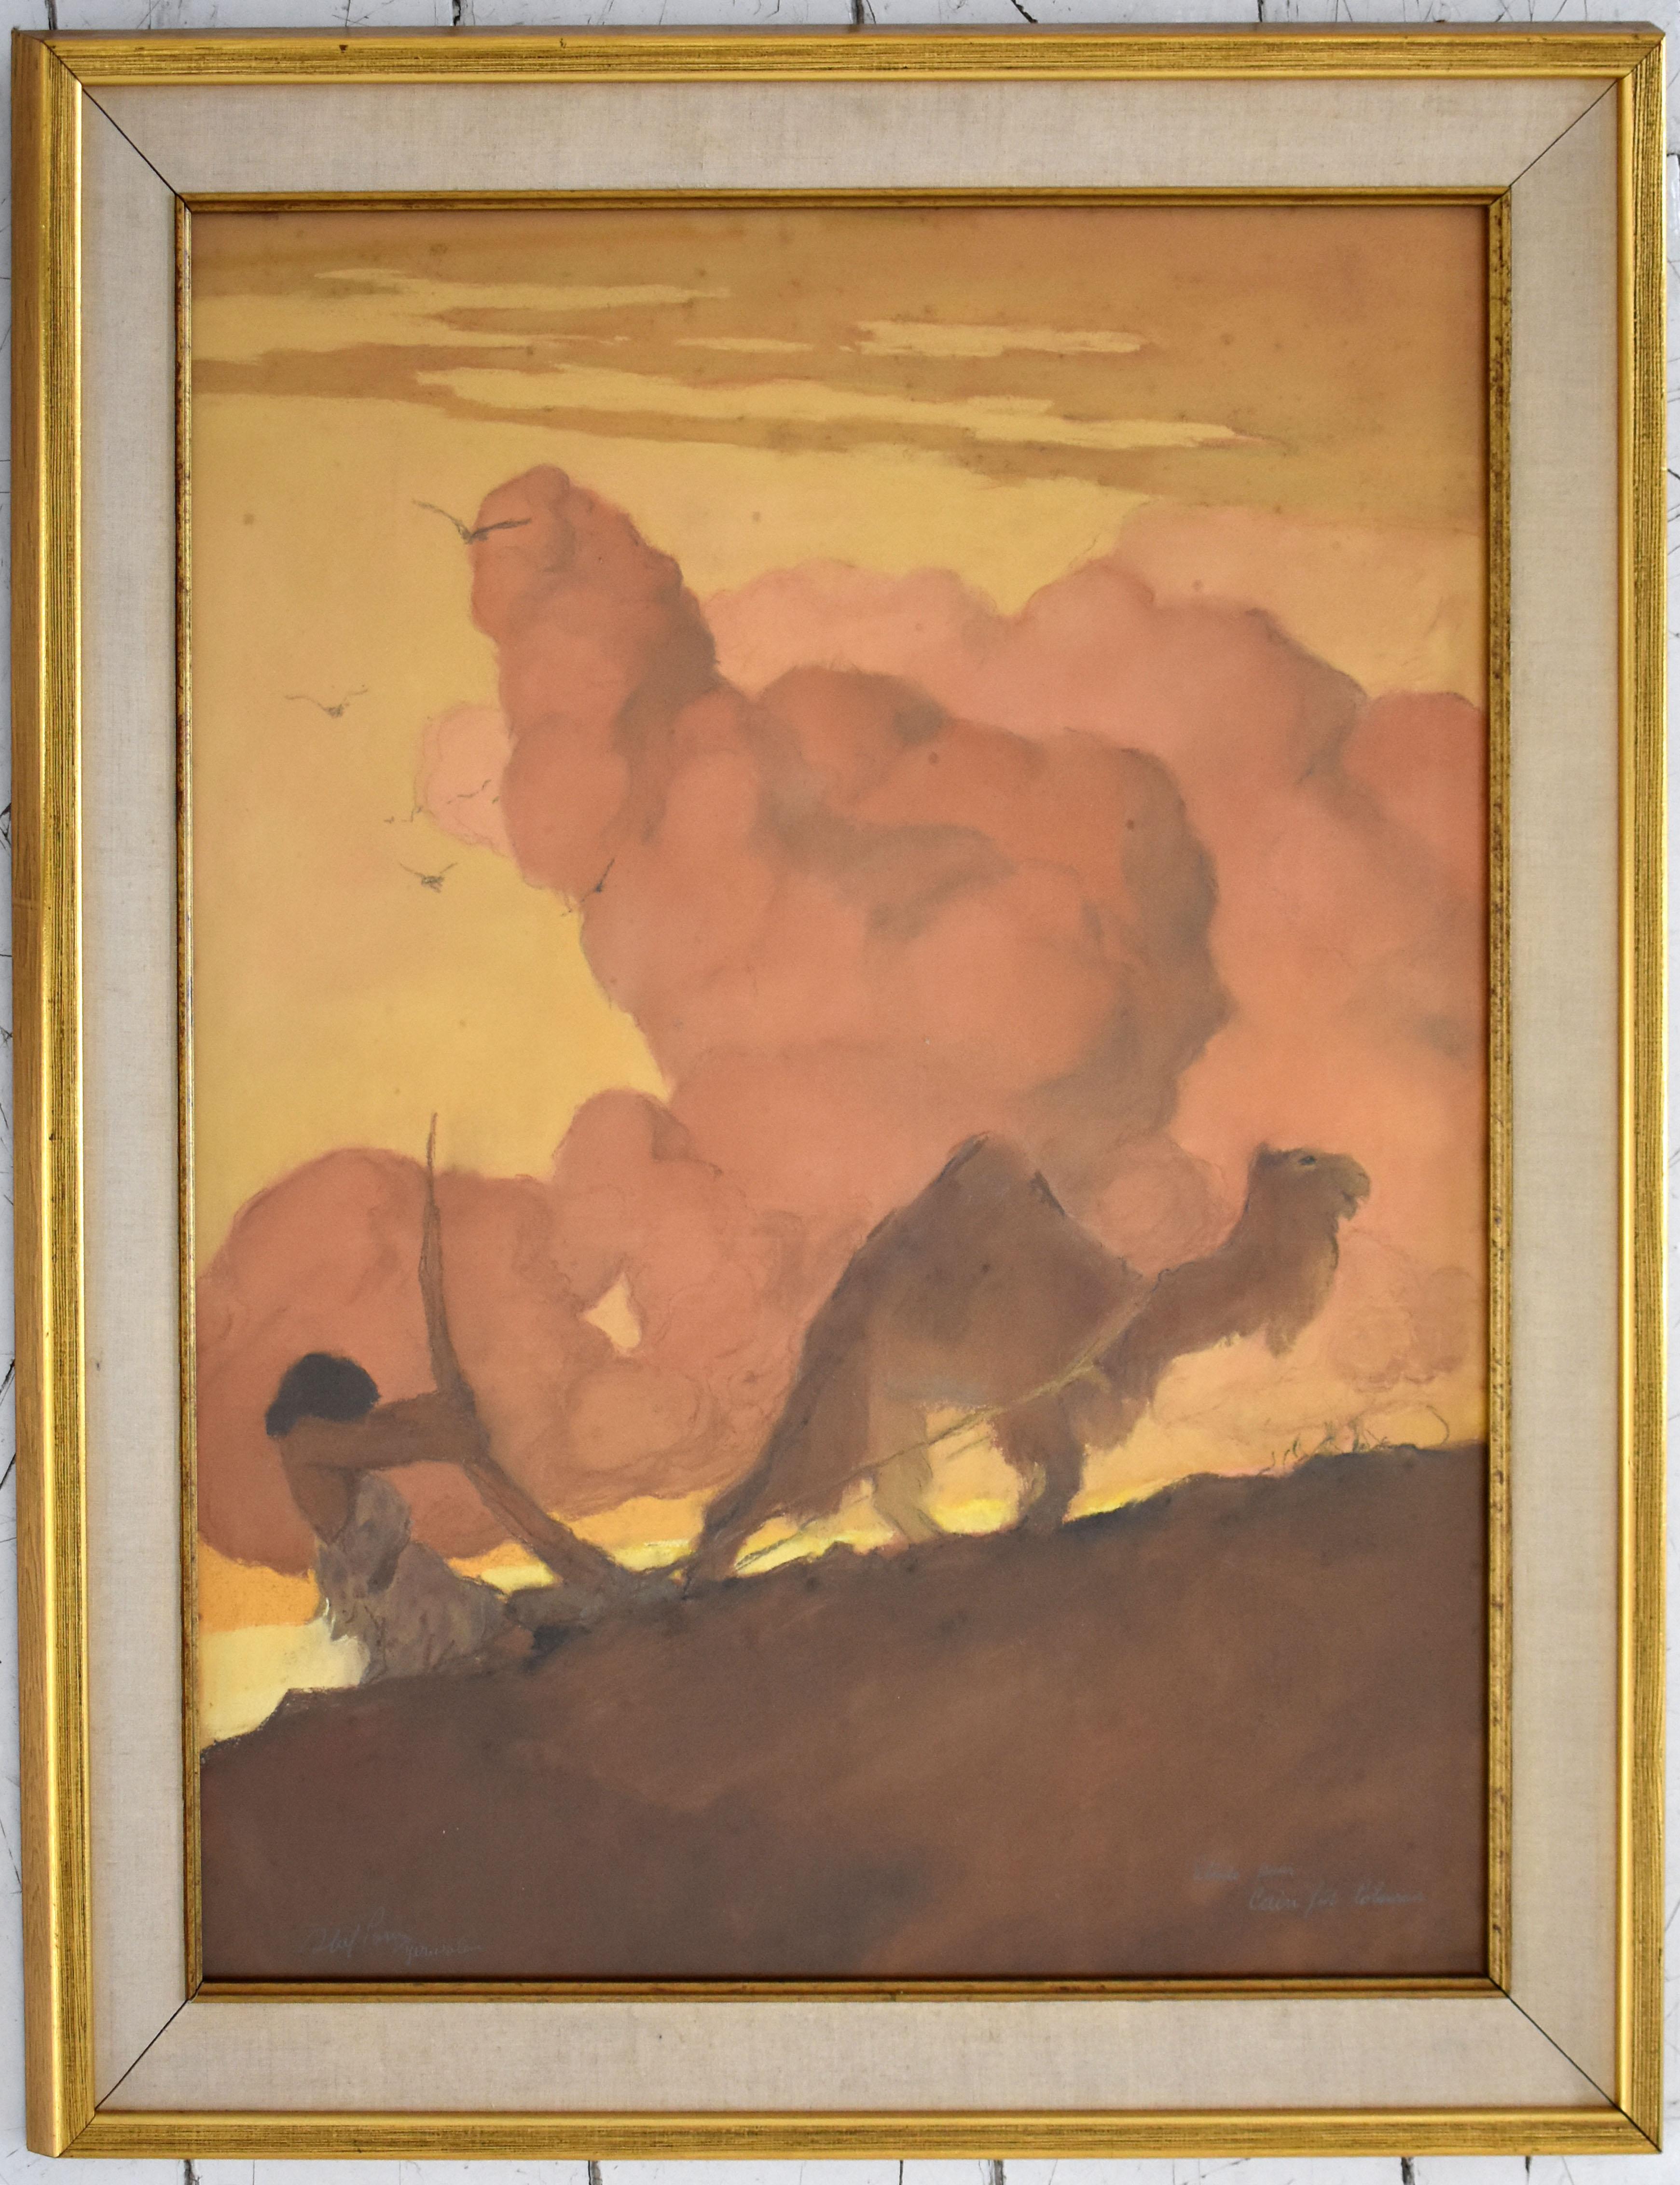 Étude pour Cain was a Plowman - Art russe pastel - Painting de Abel Pann